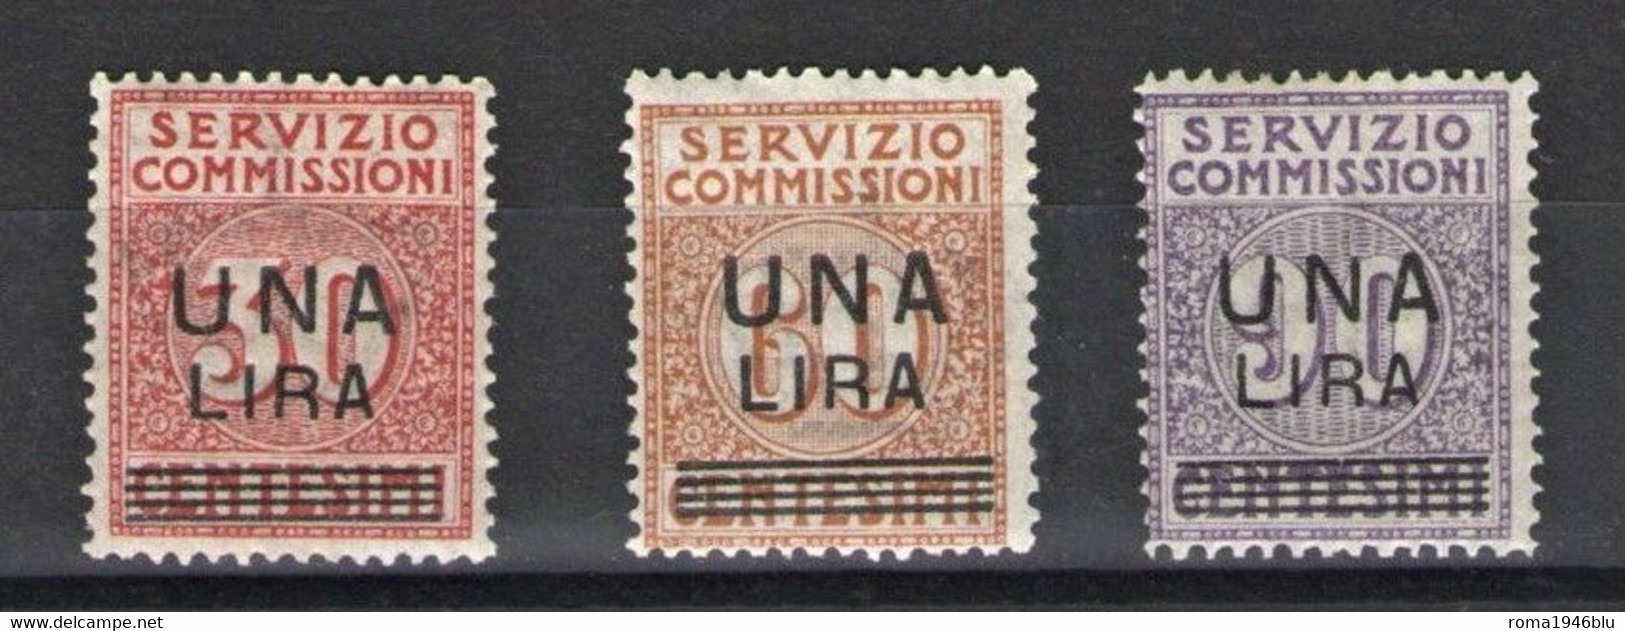 REGNO 1925 SERVIZIO COMMISSIONI ** MNH LUSSO - Segnatasse